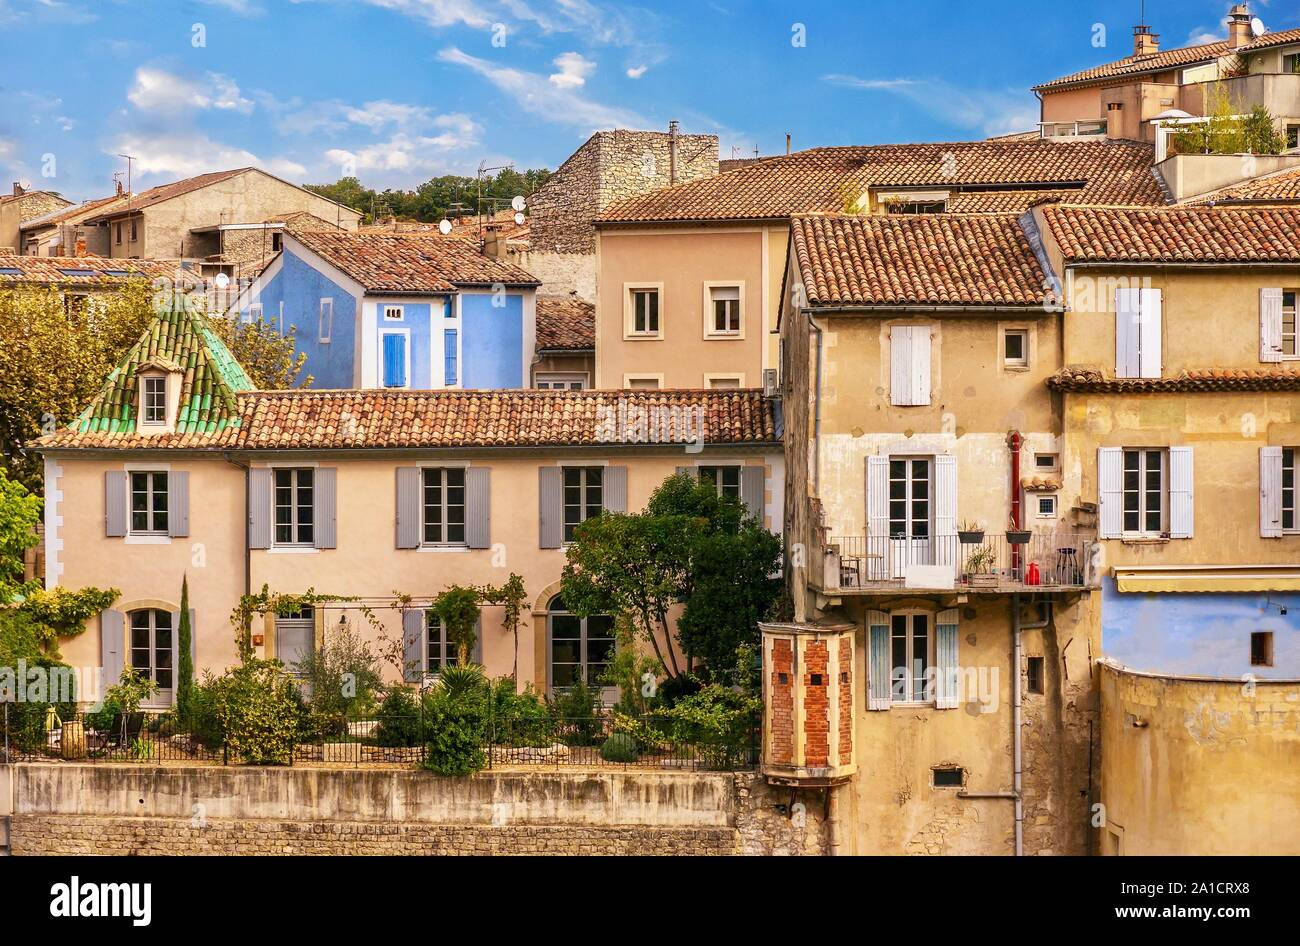 Rue d'un quartier résidentiel pittoresque dans la basse-ville de Vaison-La-Romaine en Provence, France. Banque D'Images